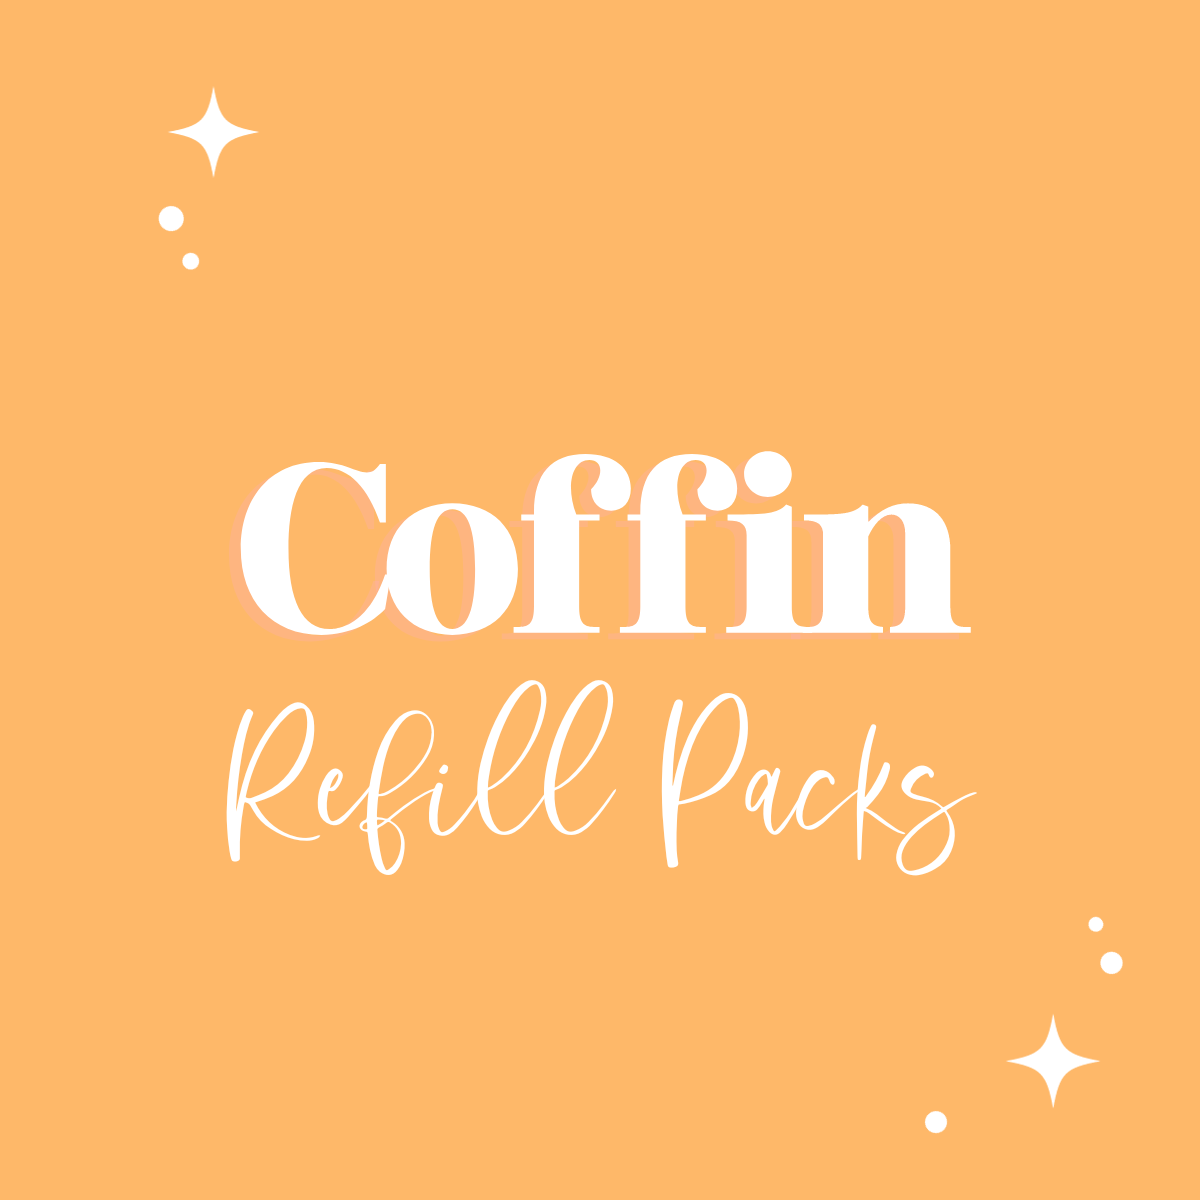 Coffin Refill Packs